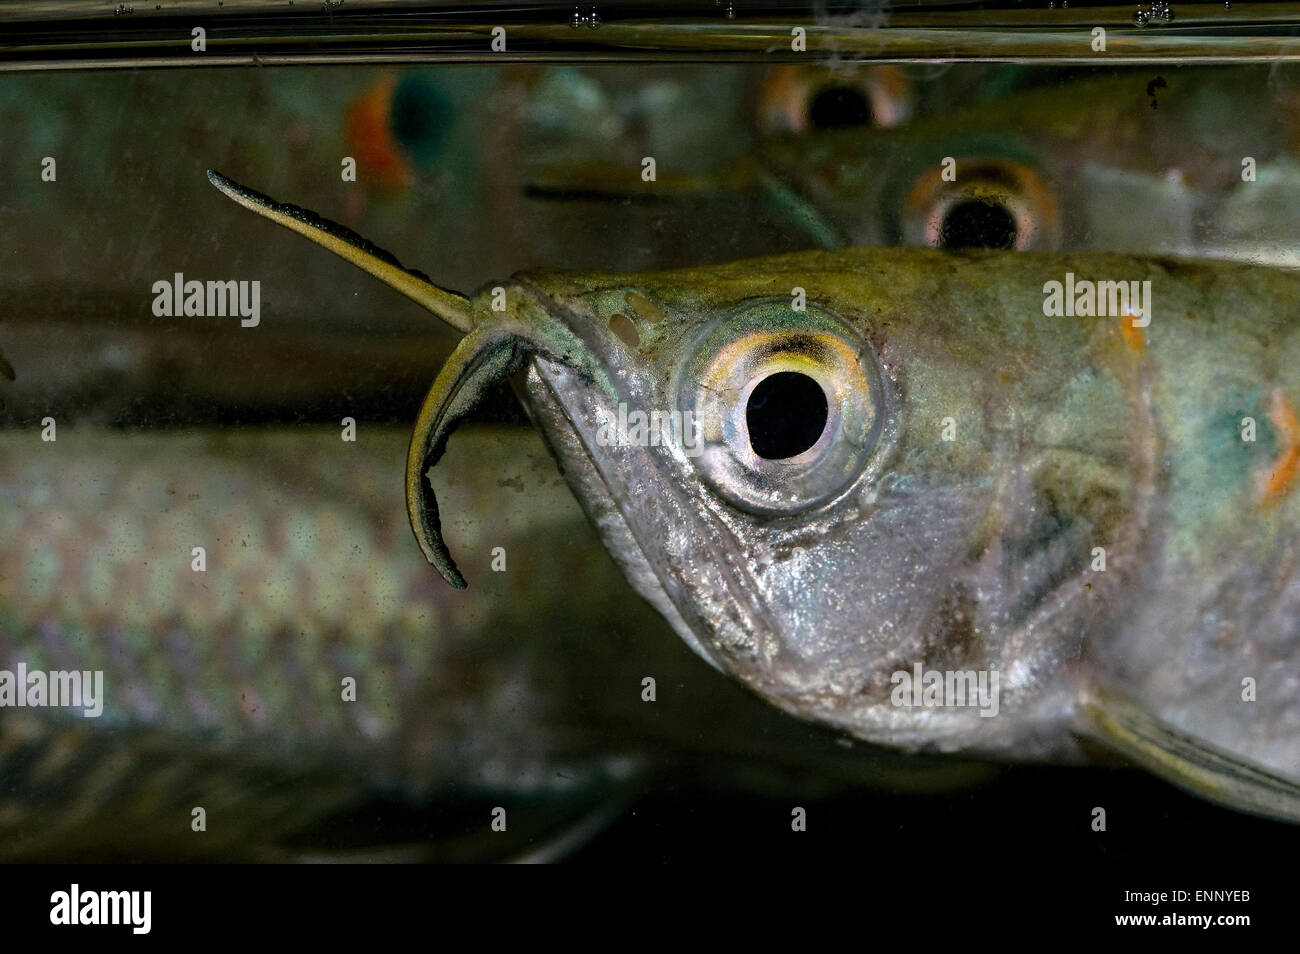 Nice young arowana fish portrait from genus Osteoglossum. Stock Photo